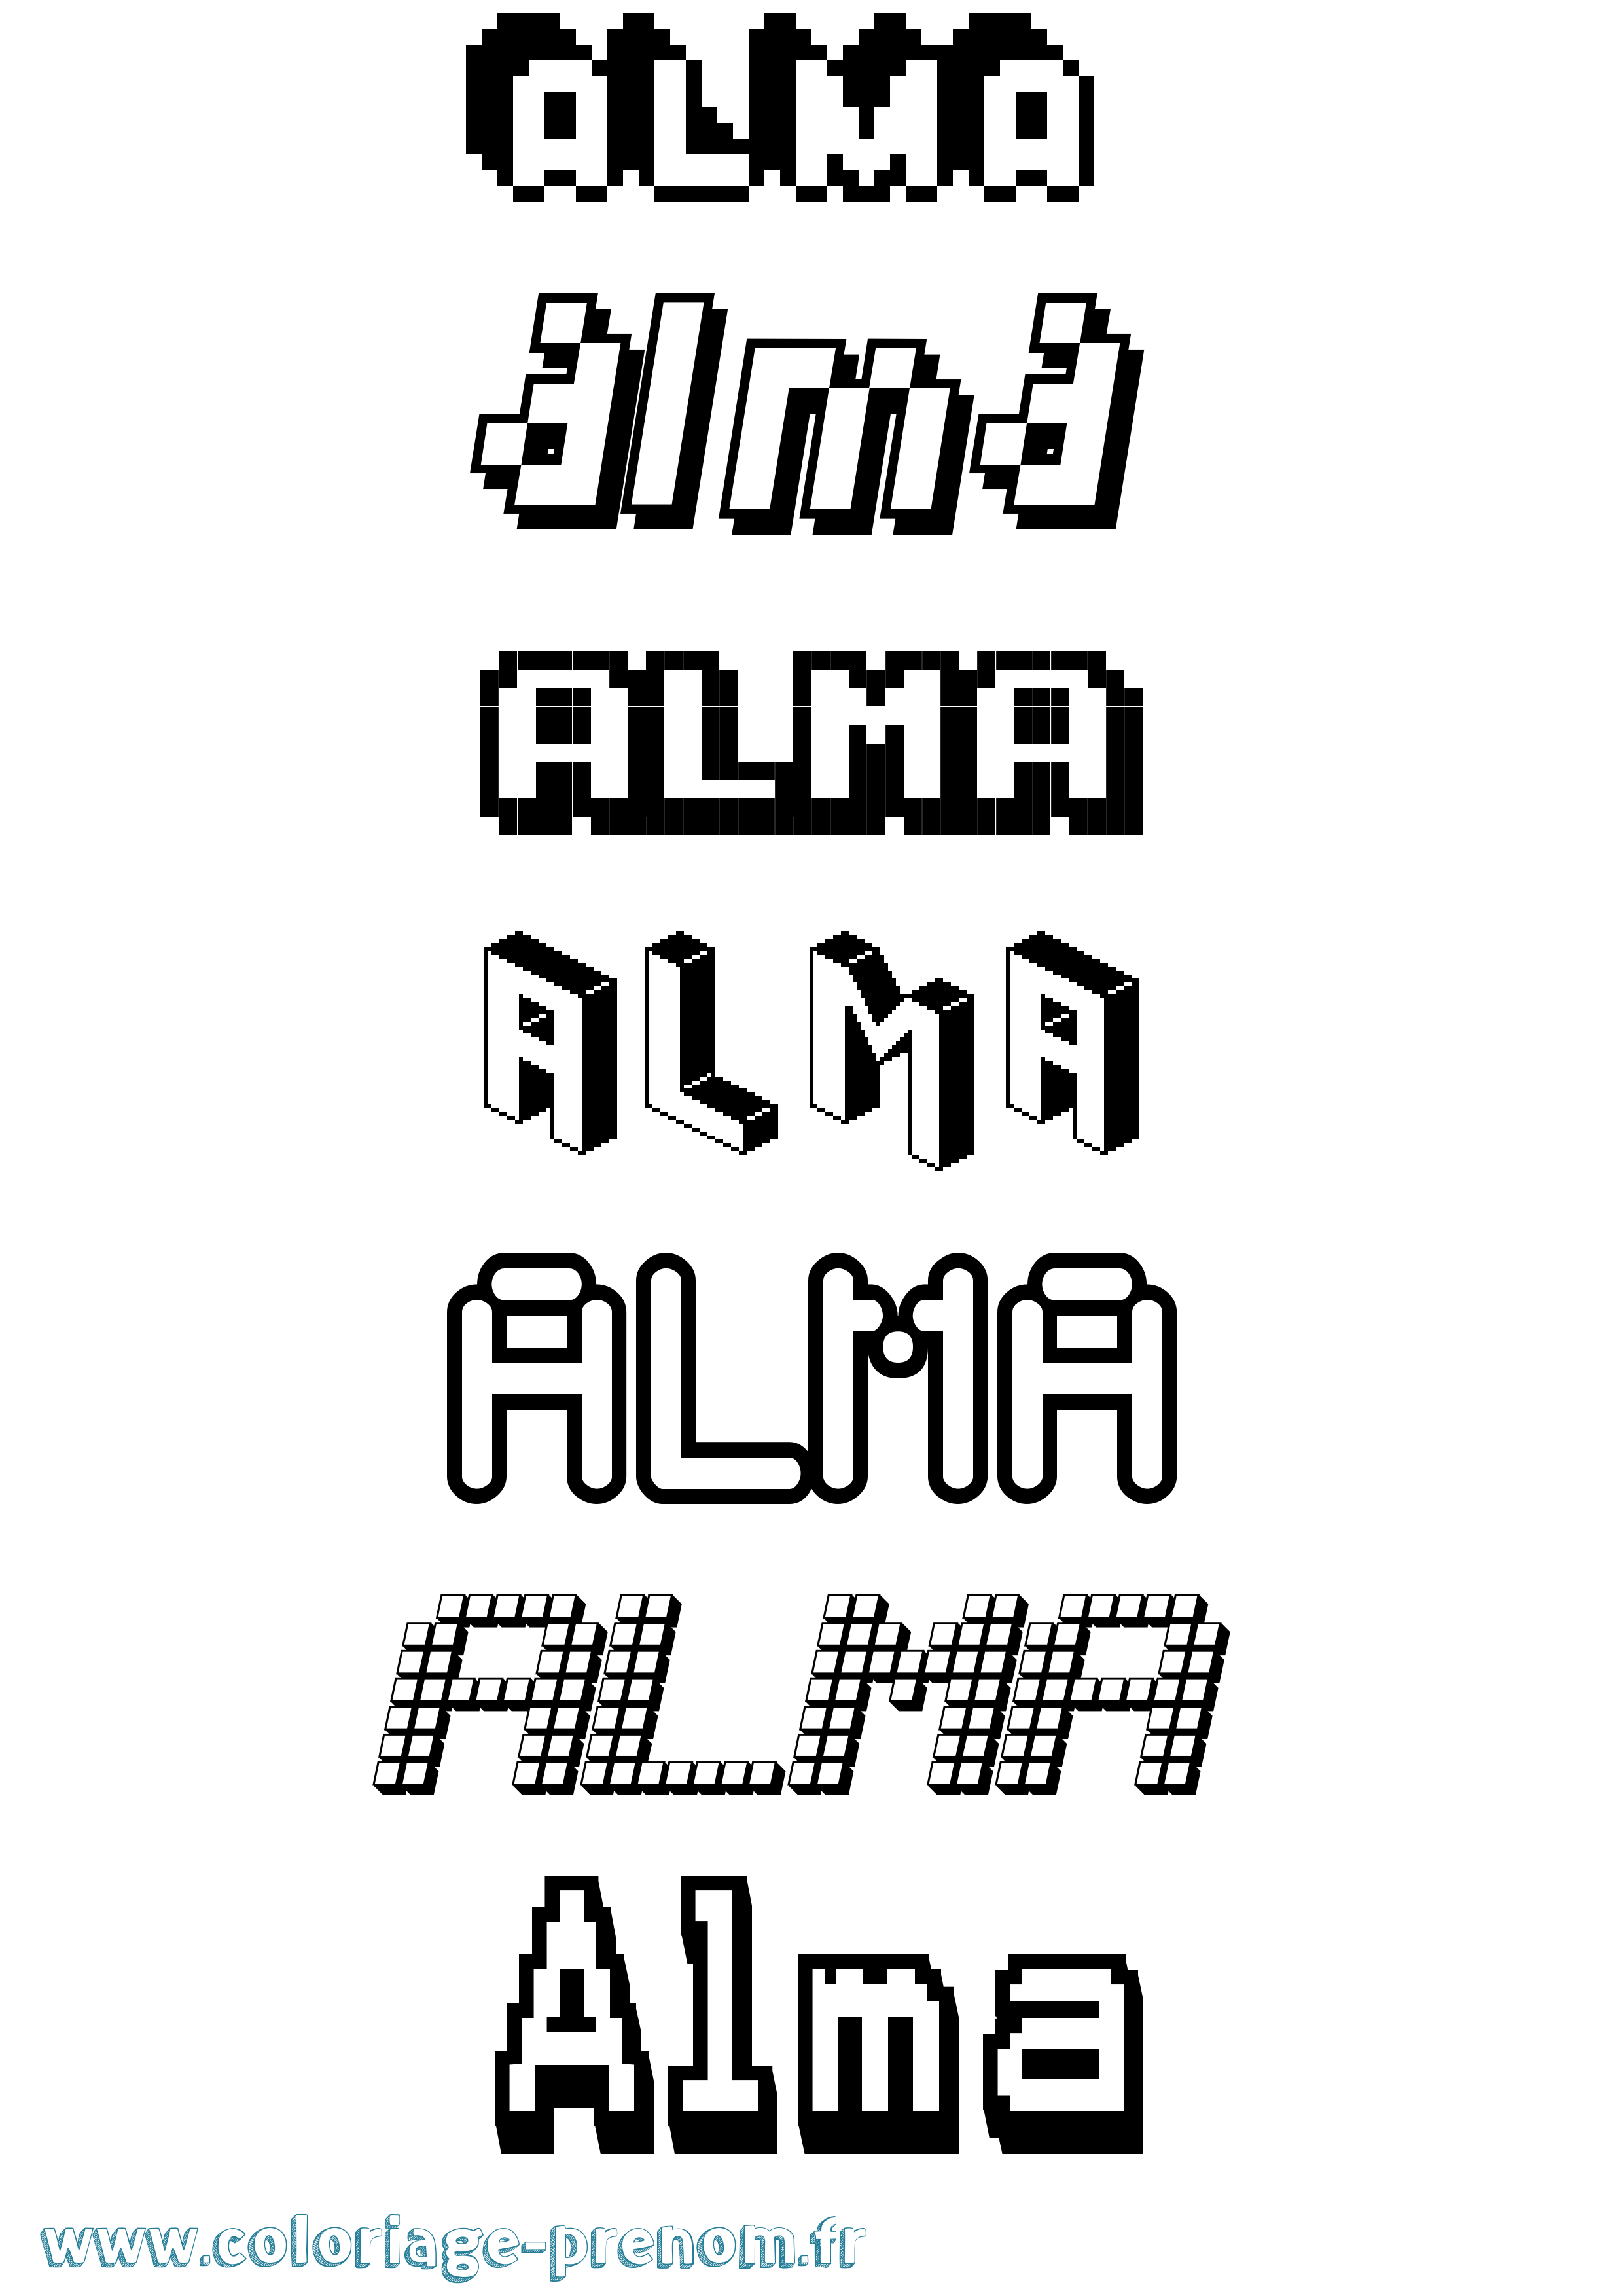 Coloriage prénom Alma Pixel